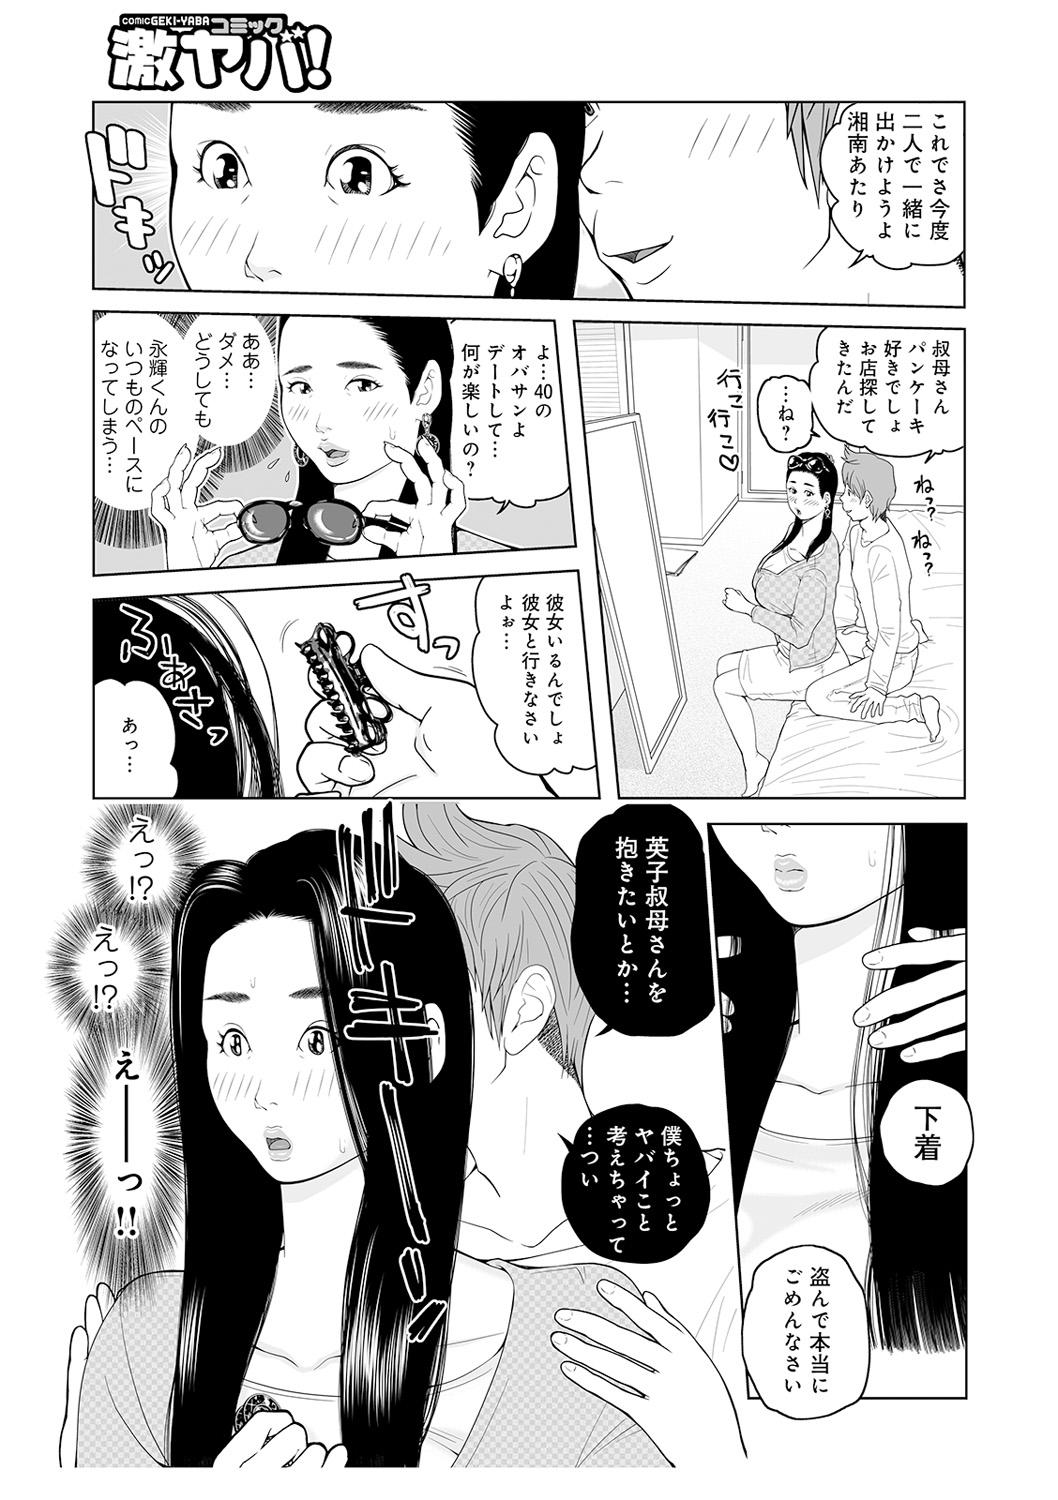 Retro Oba-san Dashite mo ii? Vol. 02 Tetona - Page 7